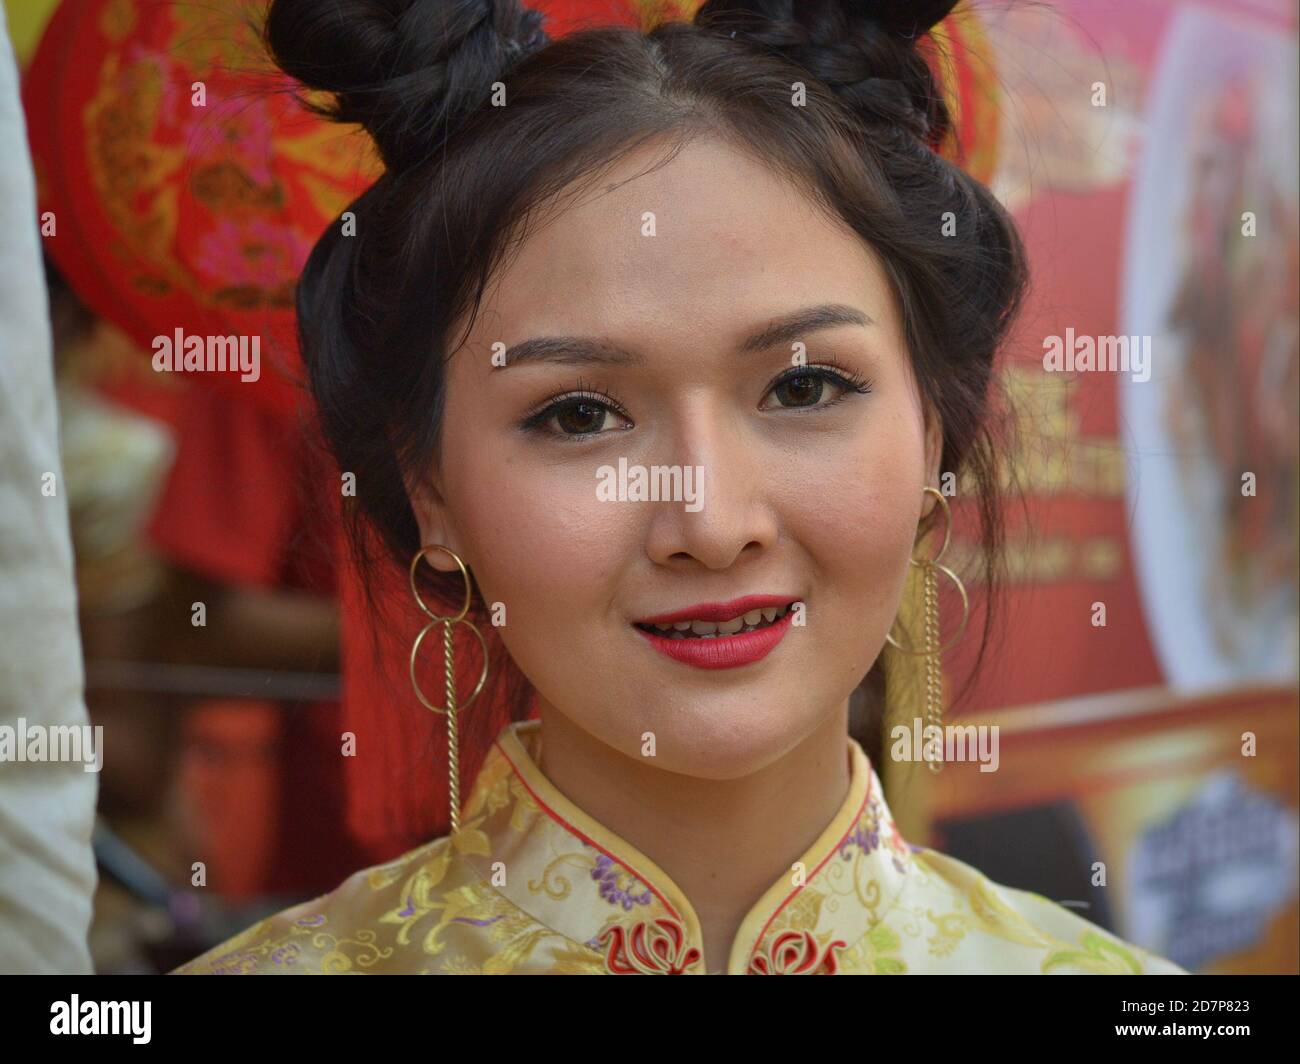 Junge Thai chinesische Schönheit mit trendigen Kontaktlinsen und traditionellen Doppel-Seite Brötchen trägt ein klassisches chinesisches Seidenkleid und lächelt für die Kamera. Stockfoto